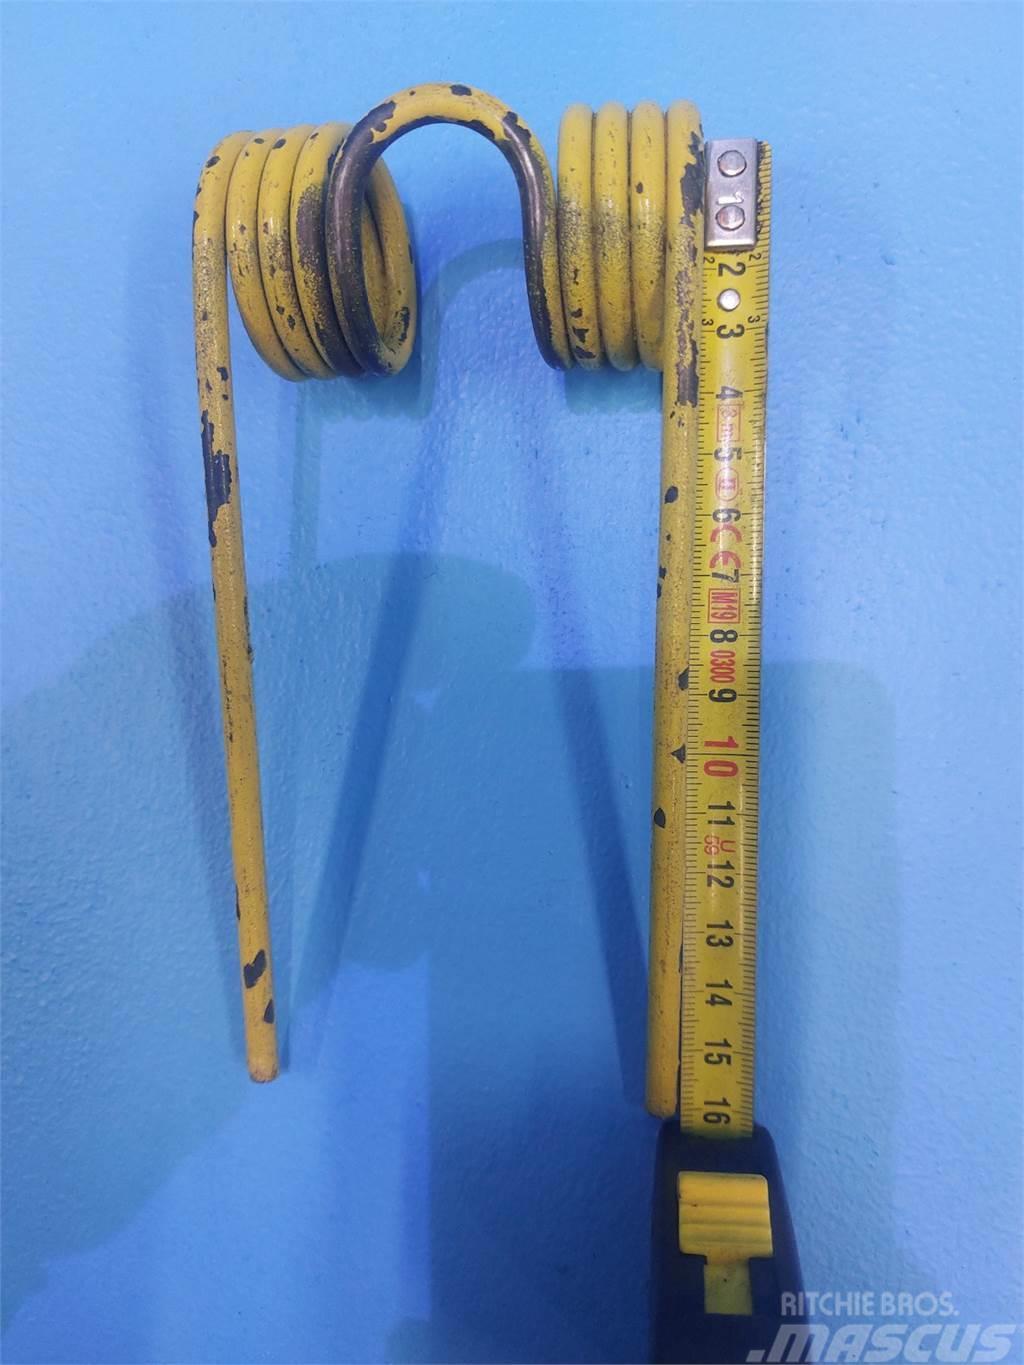  Pick-up Fjedre (19stk) Længde 17cm-Bredde 7.5cm. Іншi